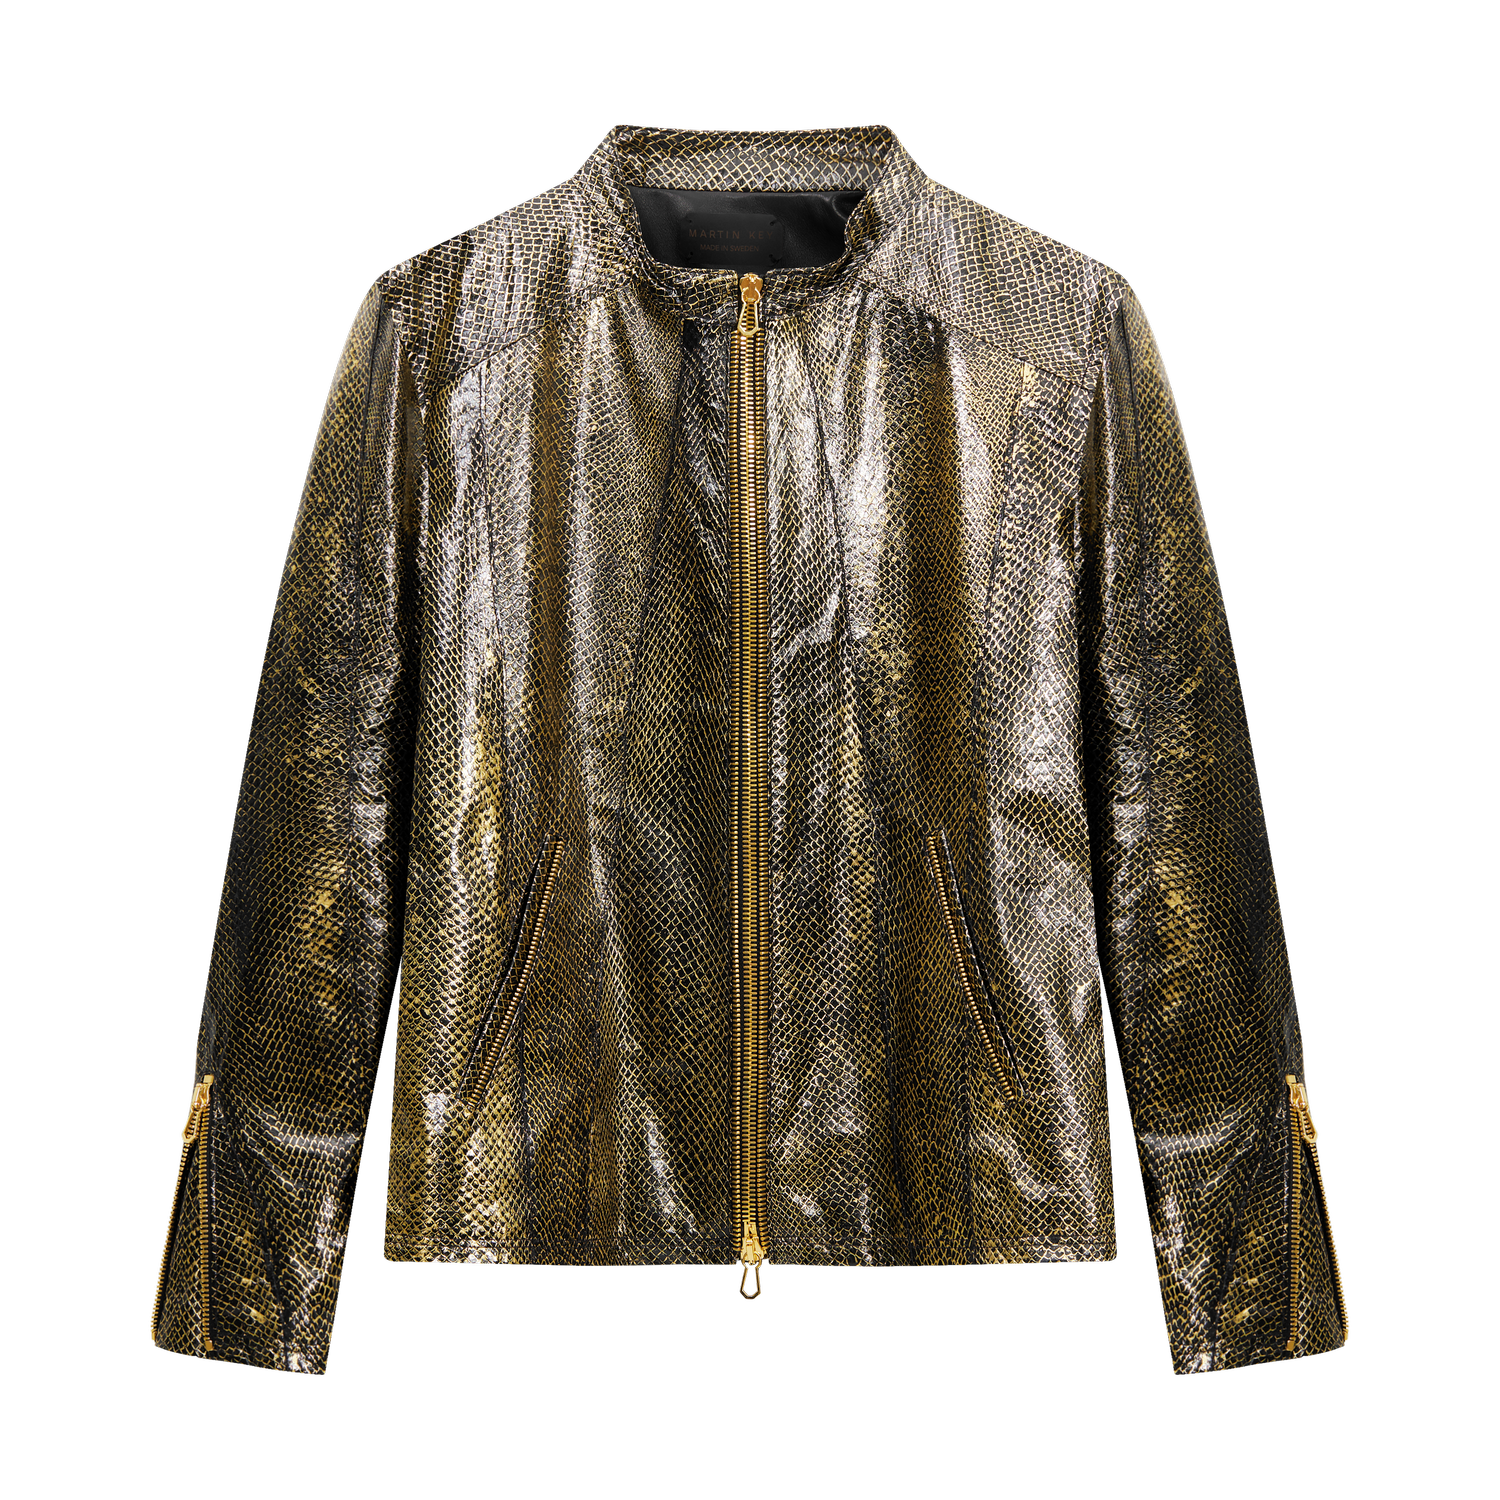 Martin Key Leather Jacket